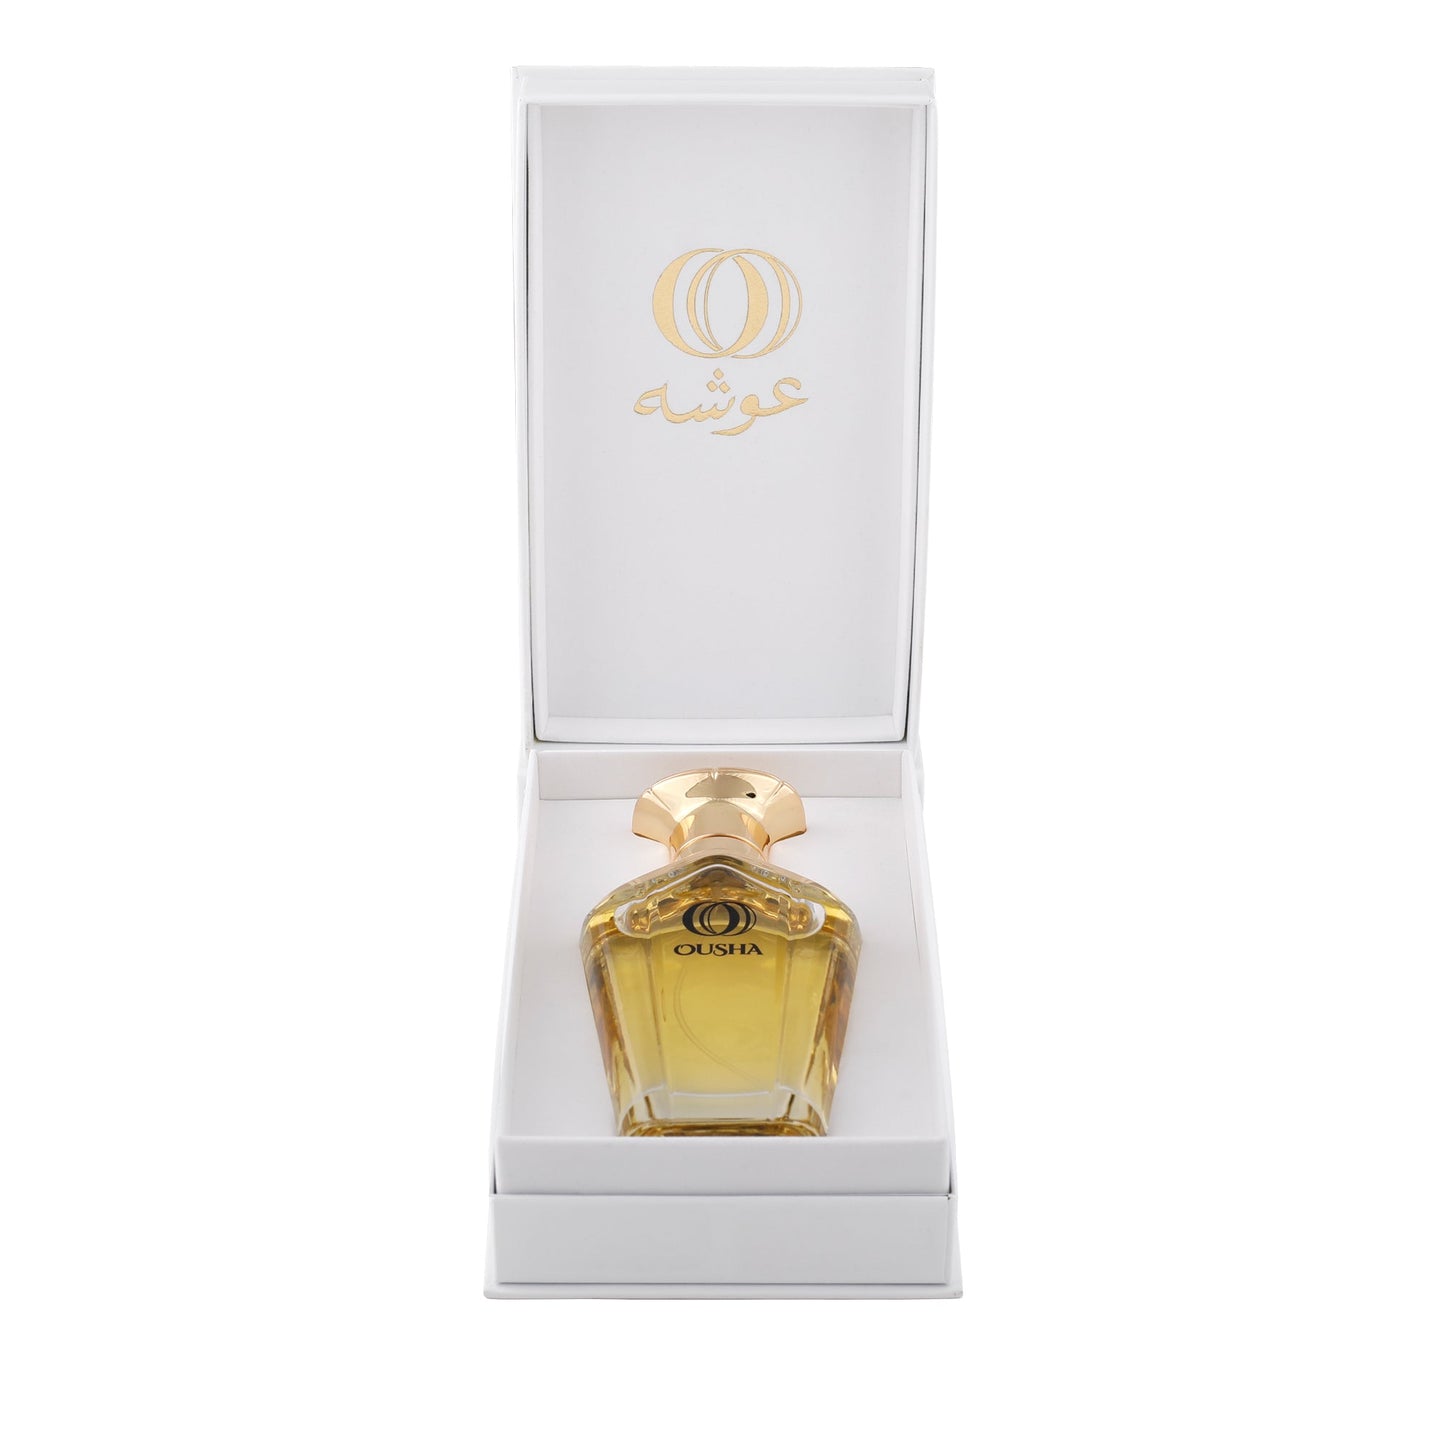 Ousha perfume - OUSHA PERFUME SWEET LEATHER 75ml